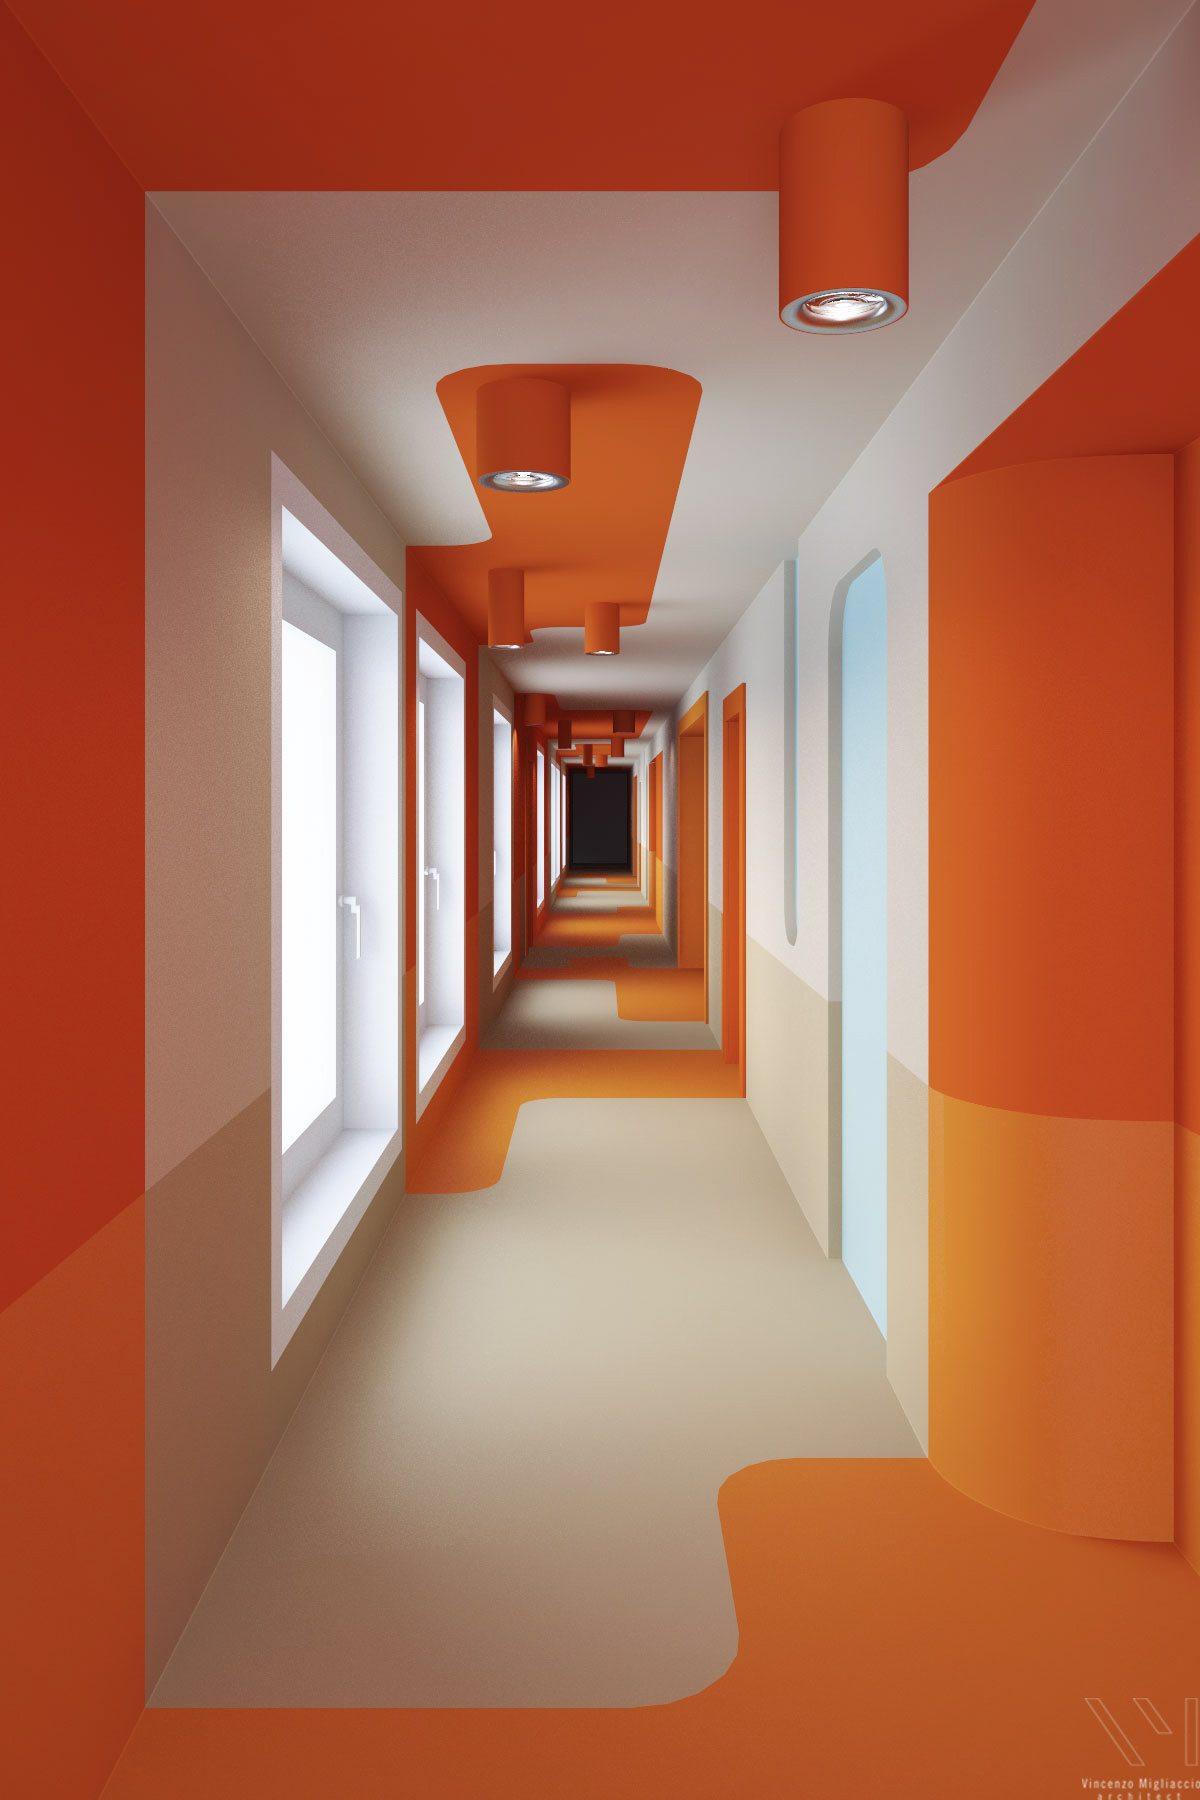 architecture graphic Illustrator corridor orange design